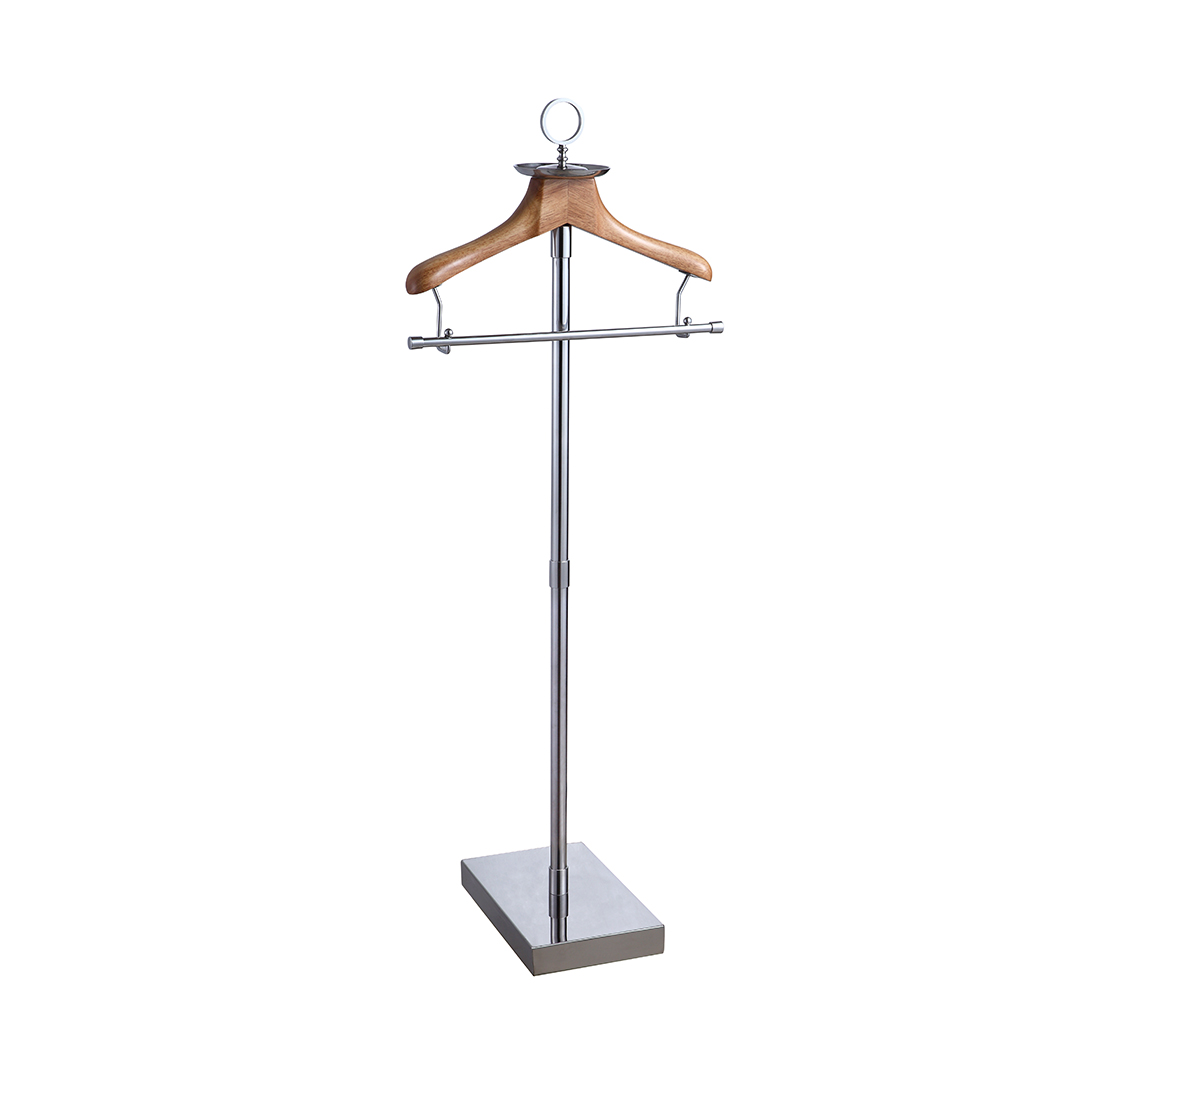 Standing Coat Rack with Wooden Cloth Hanger 